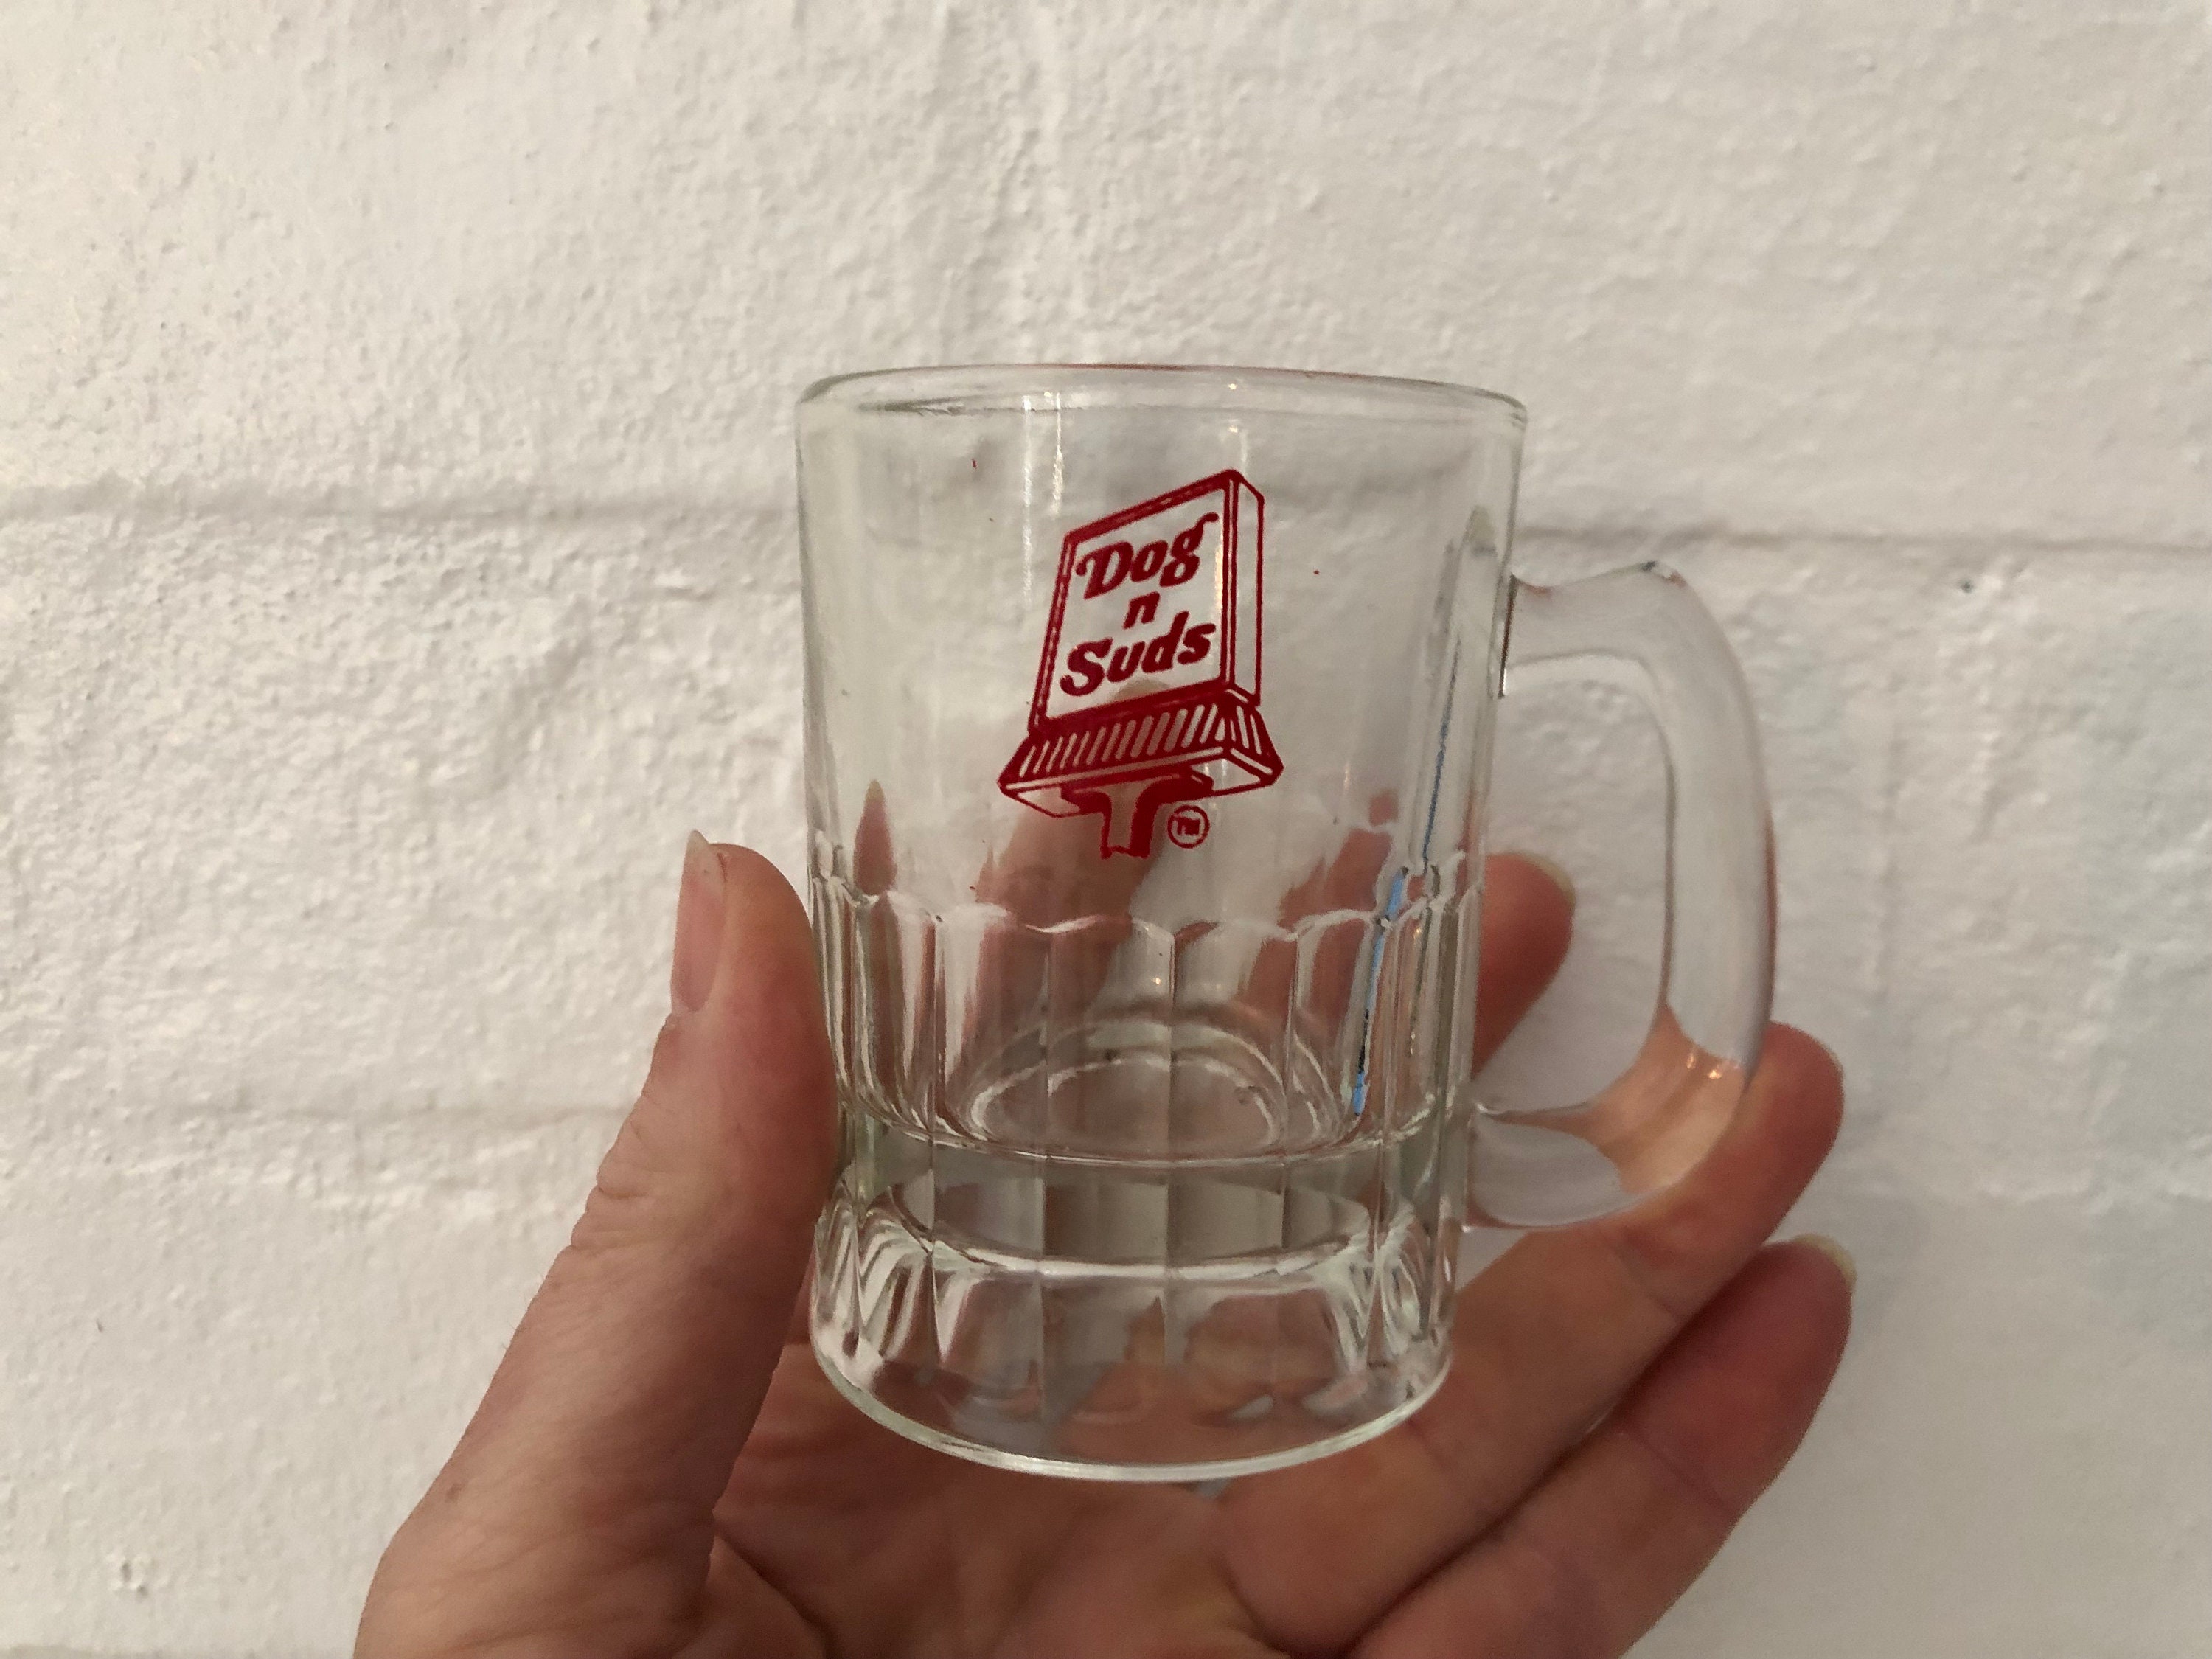 Dog N Suds Mug, Root Beer Mug, Collectible Mug, Beer Glass, Man